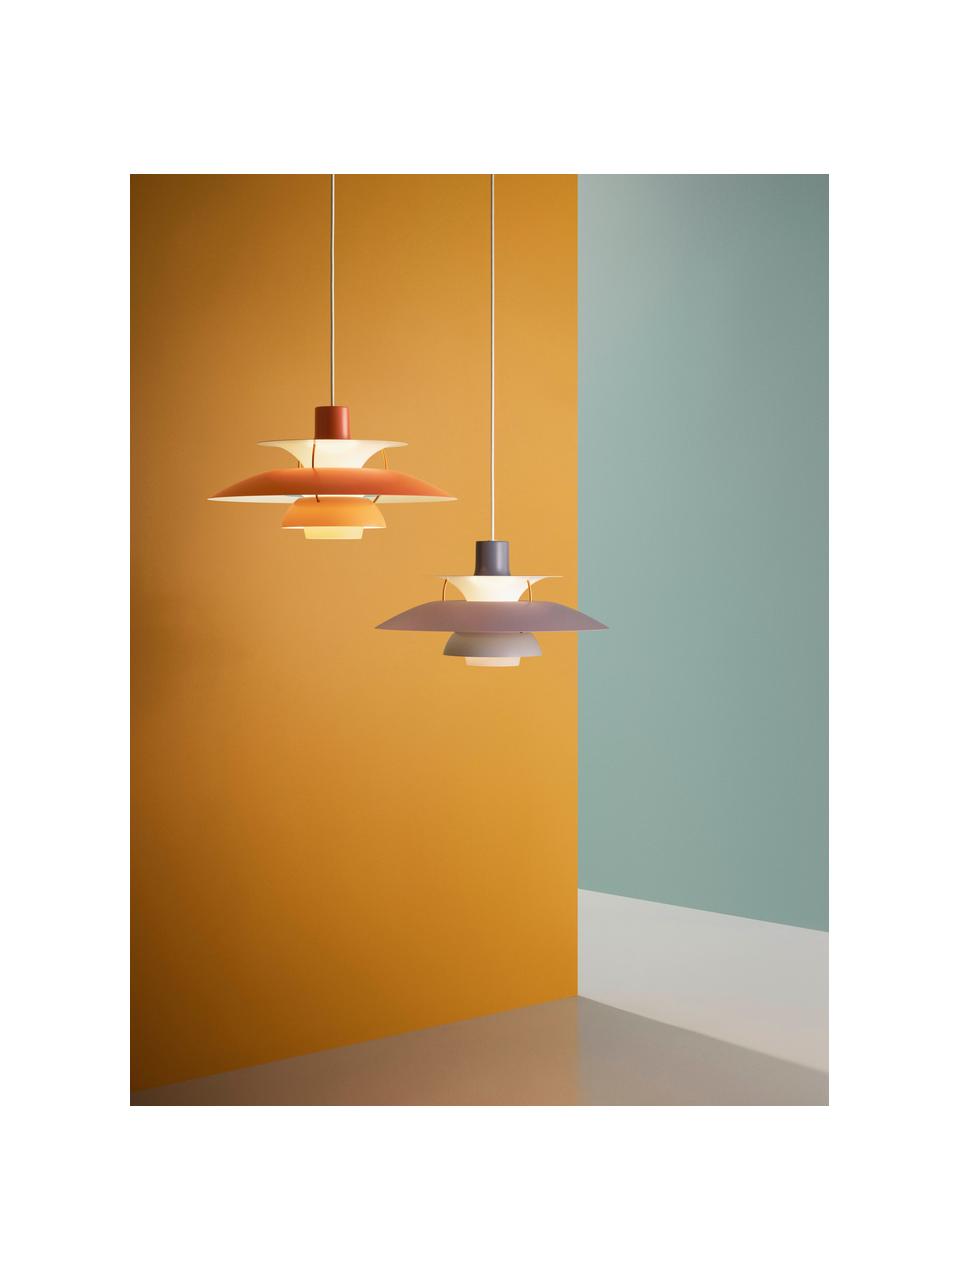 Hanglamp PH 5, verschillende formaten, Lampenkap: gecoat metaal, Diffuser: glas, semi-transparant, Grijstinten, goudkleurig, Ø 50 x H 27 cm